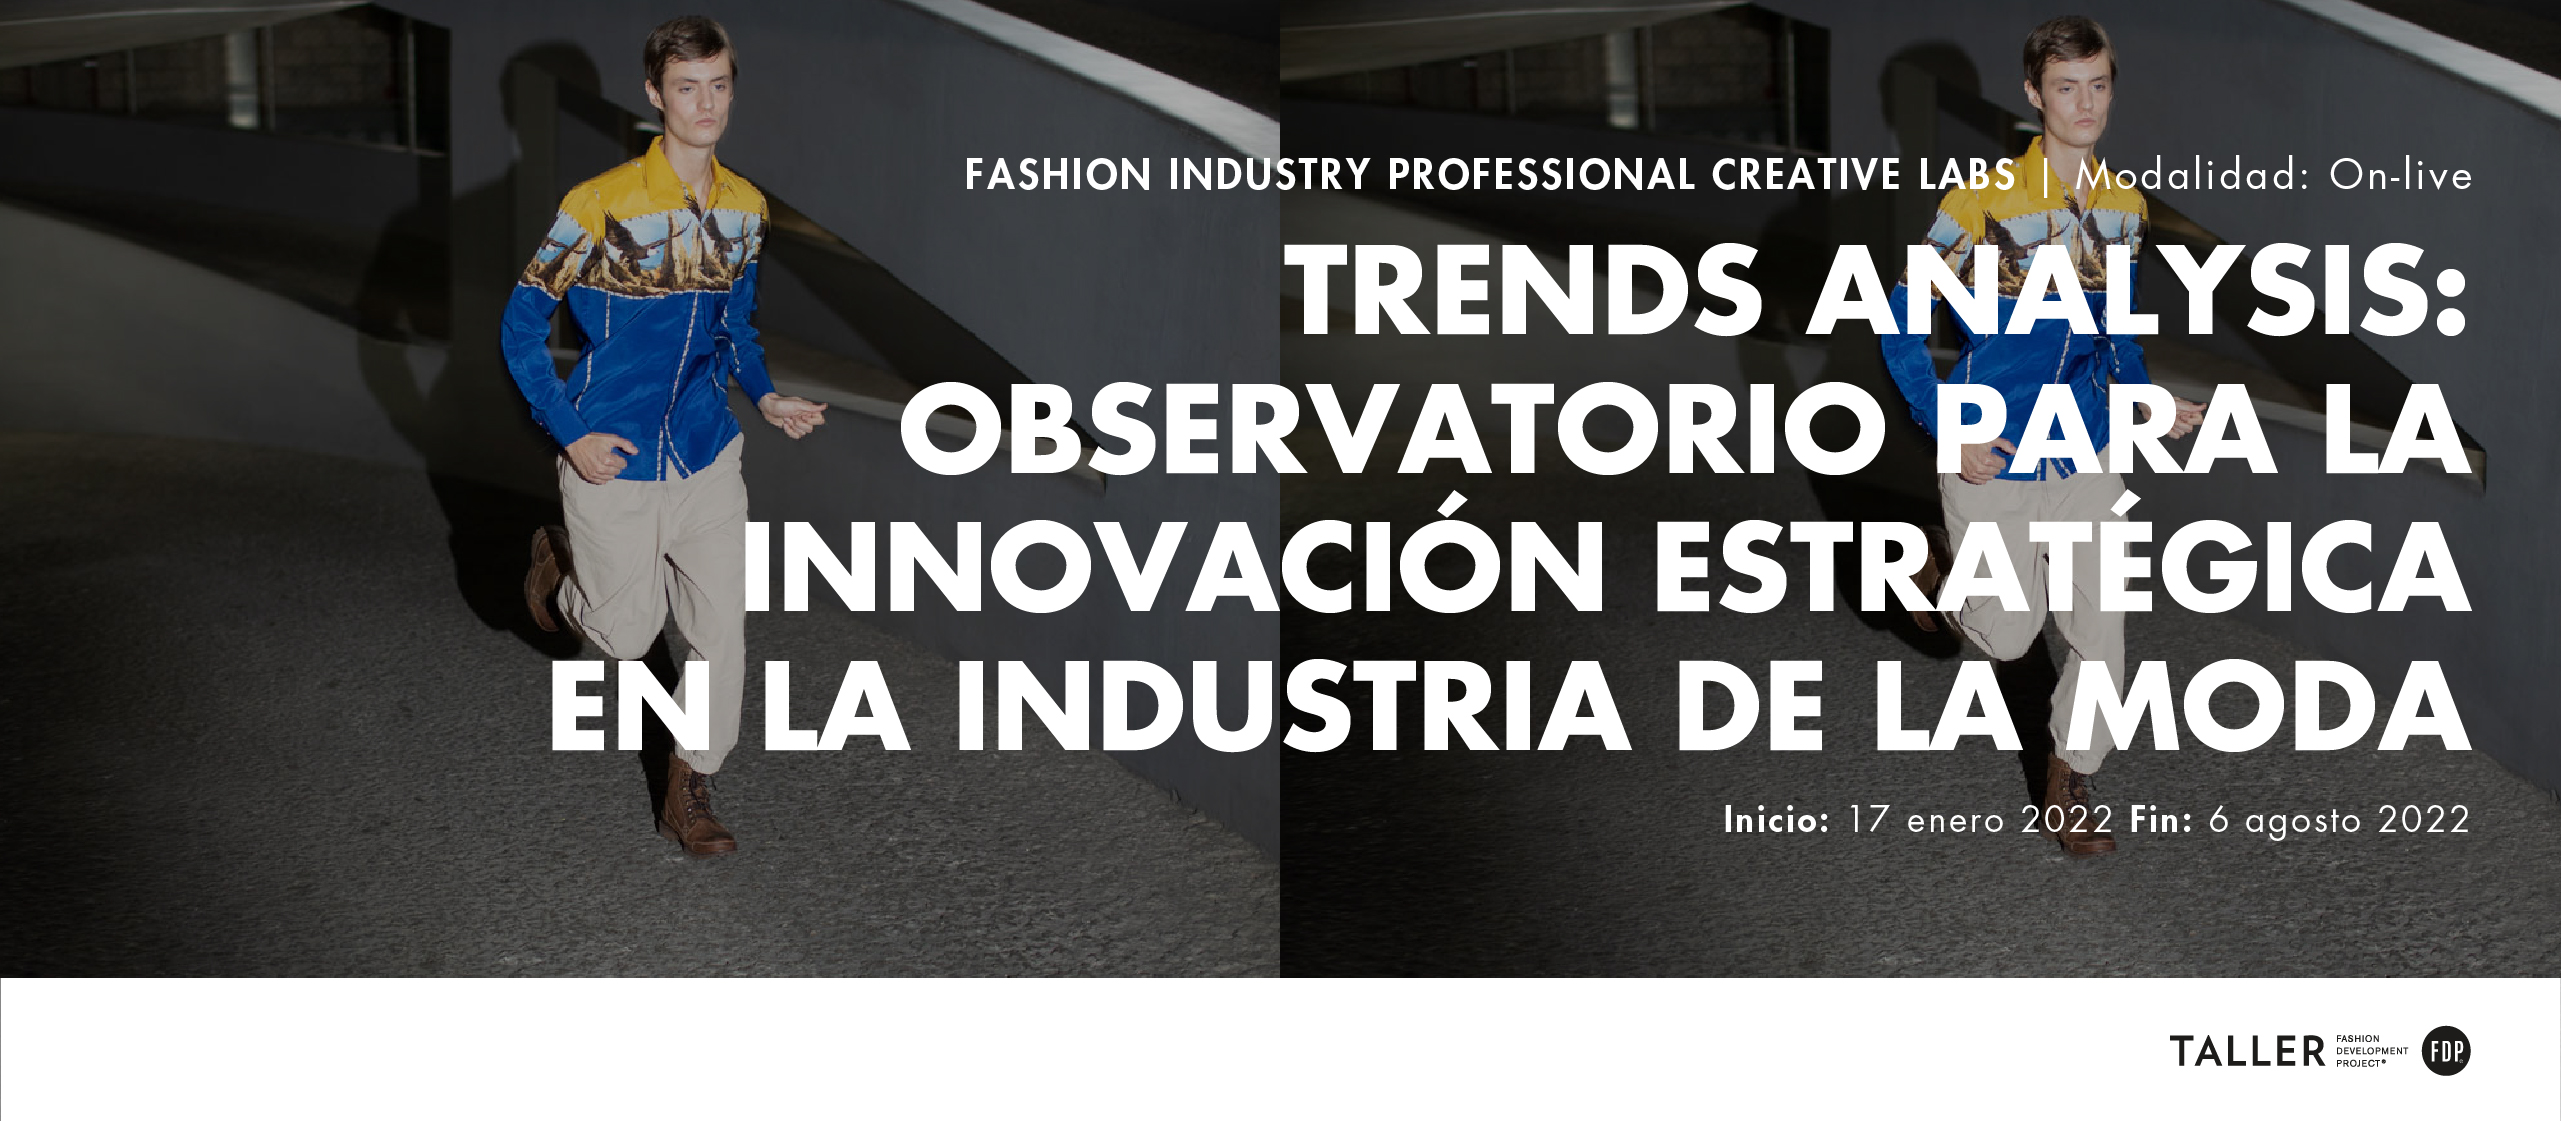 Inicio Creative Lab On-live: Trends analysis: Observatorio de tendencias para la innovación en la industria de la moda.